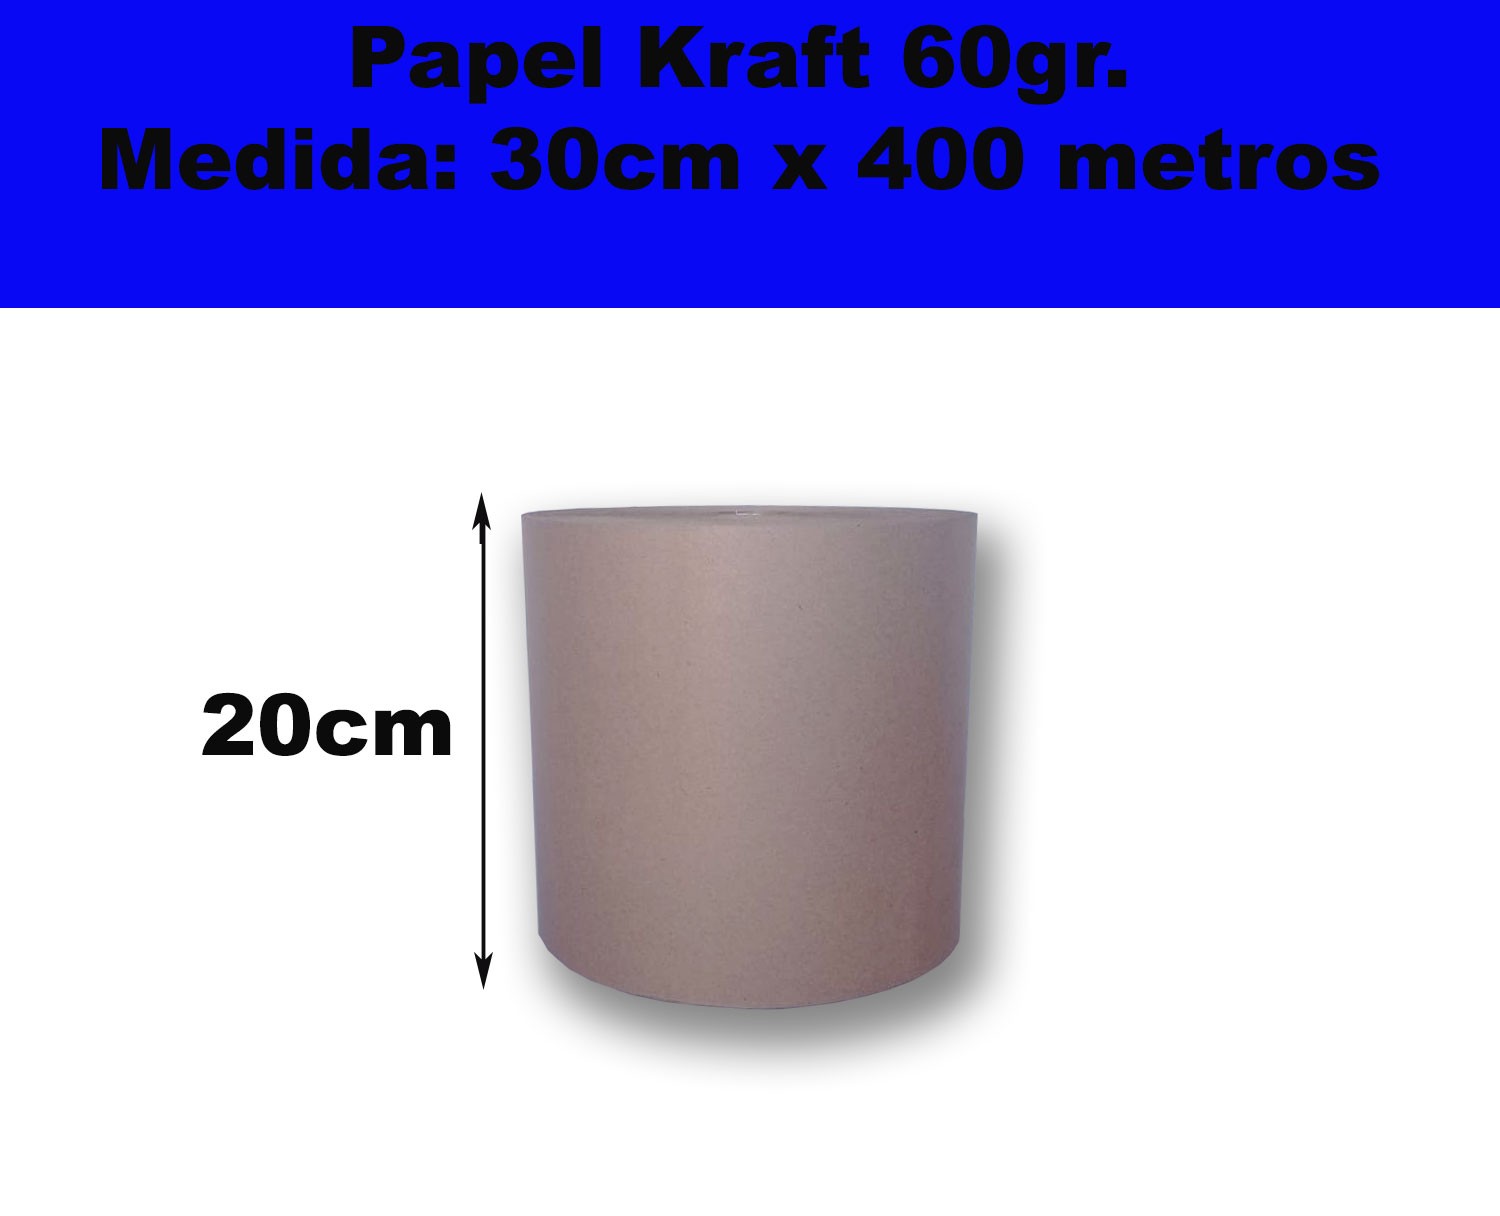 Rollos de papel Kraft para Embalar, rellenar o pintar.140 metros. Economicos